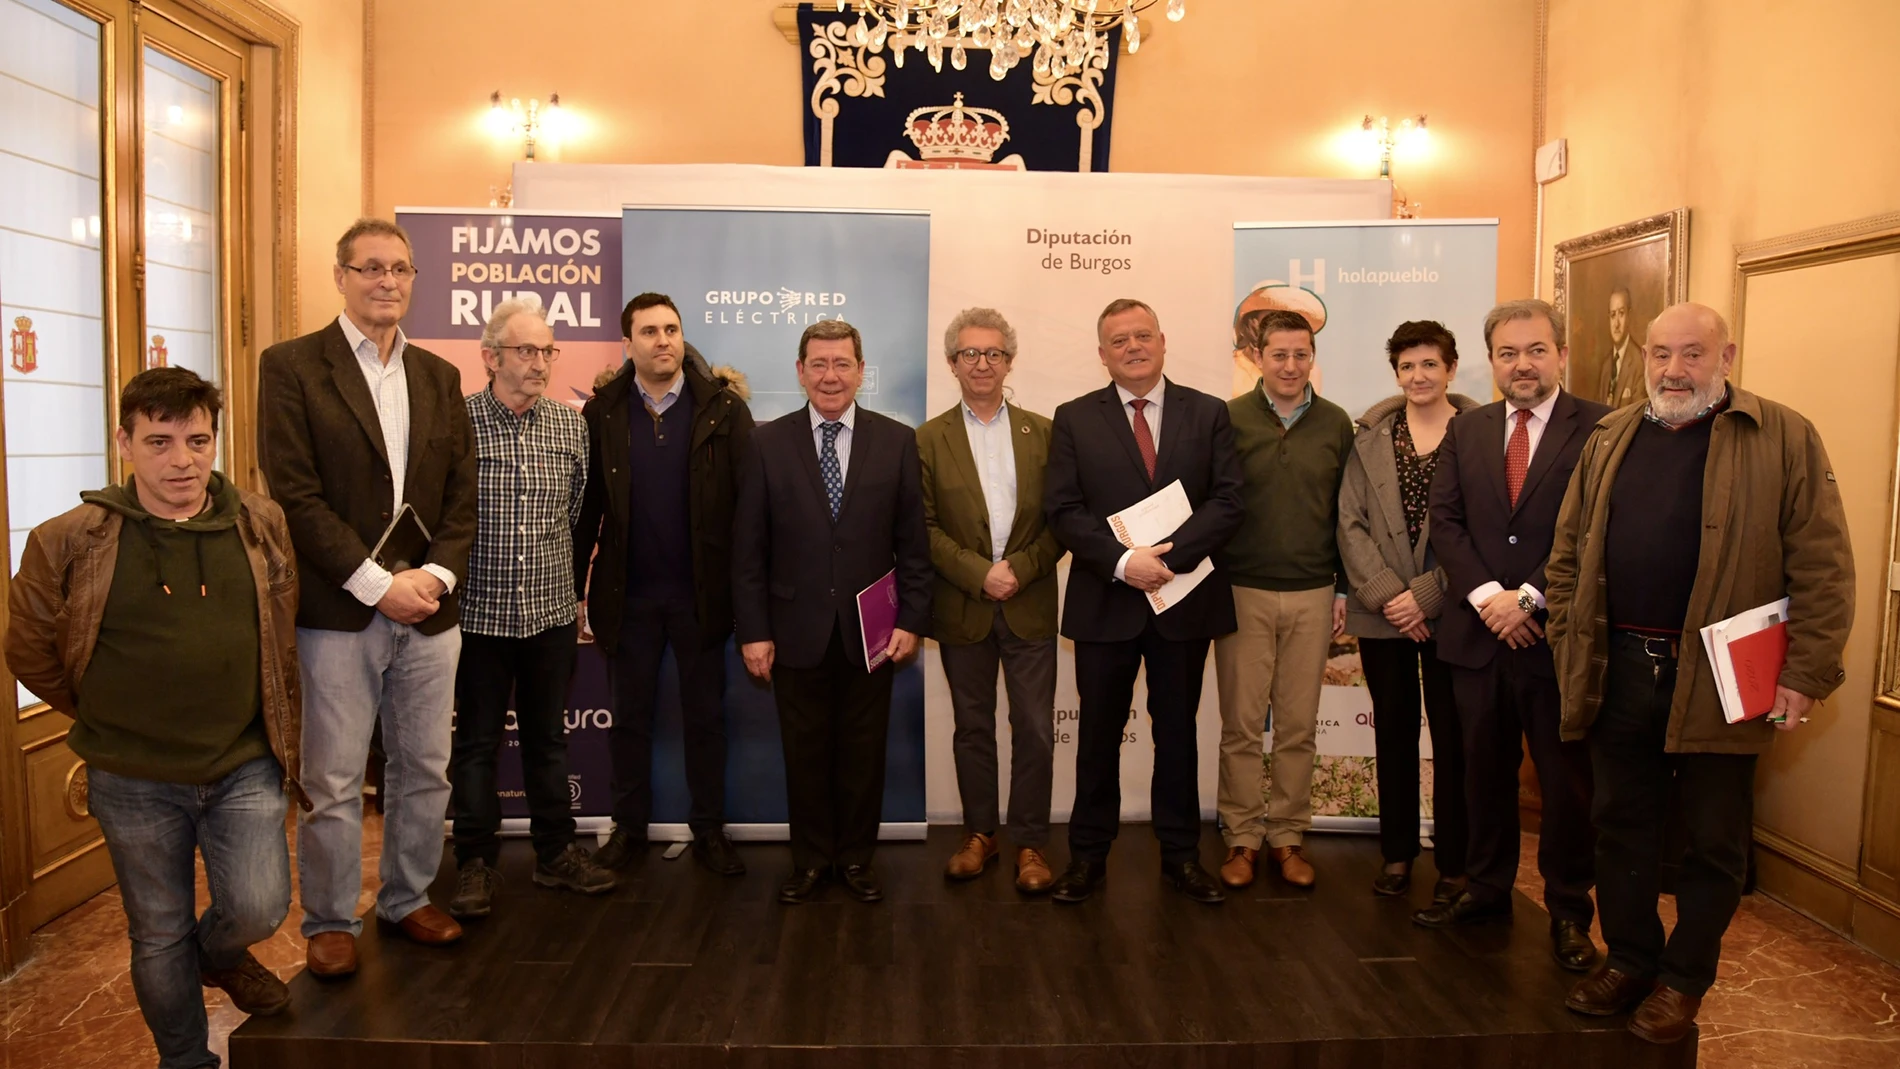 Presentación del proyecto «Holapueblo» en Burgos con representantes de los siete municipios y el presidente de la Diputación provincial, César Rico, entre otros